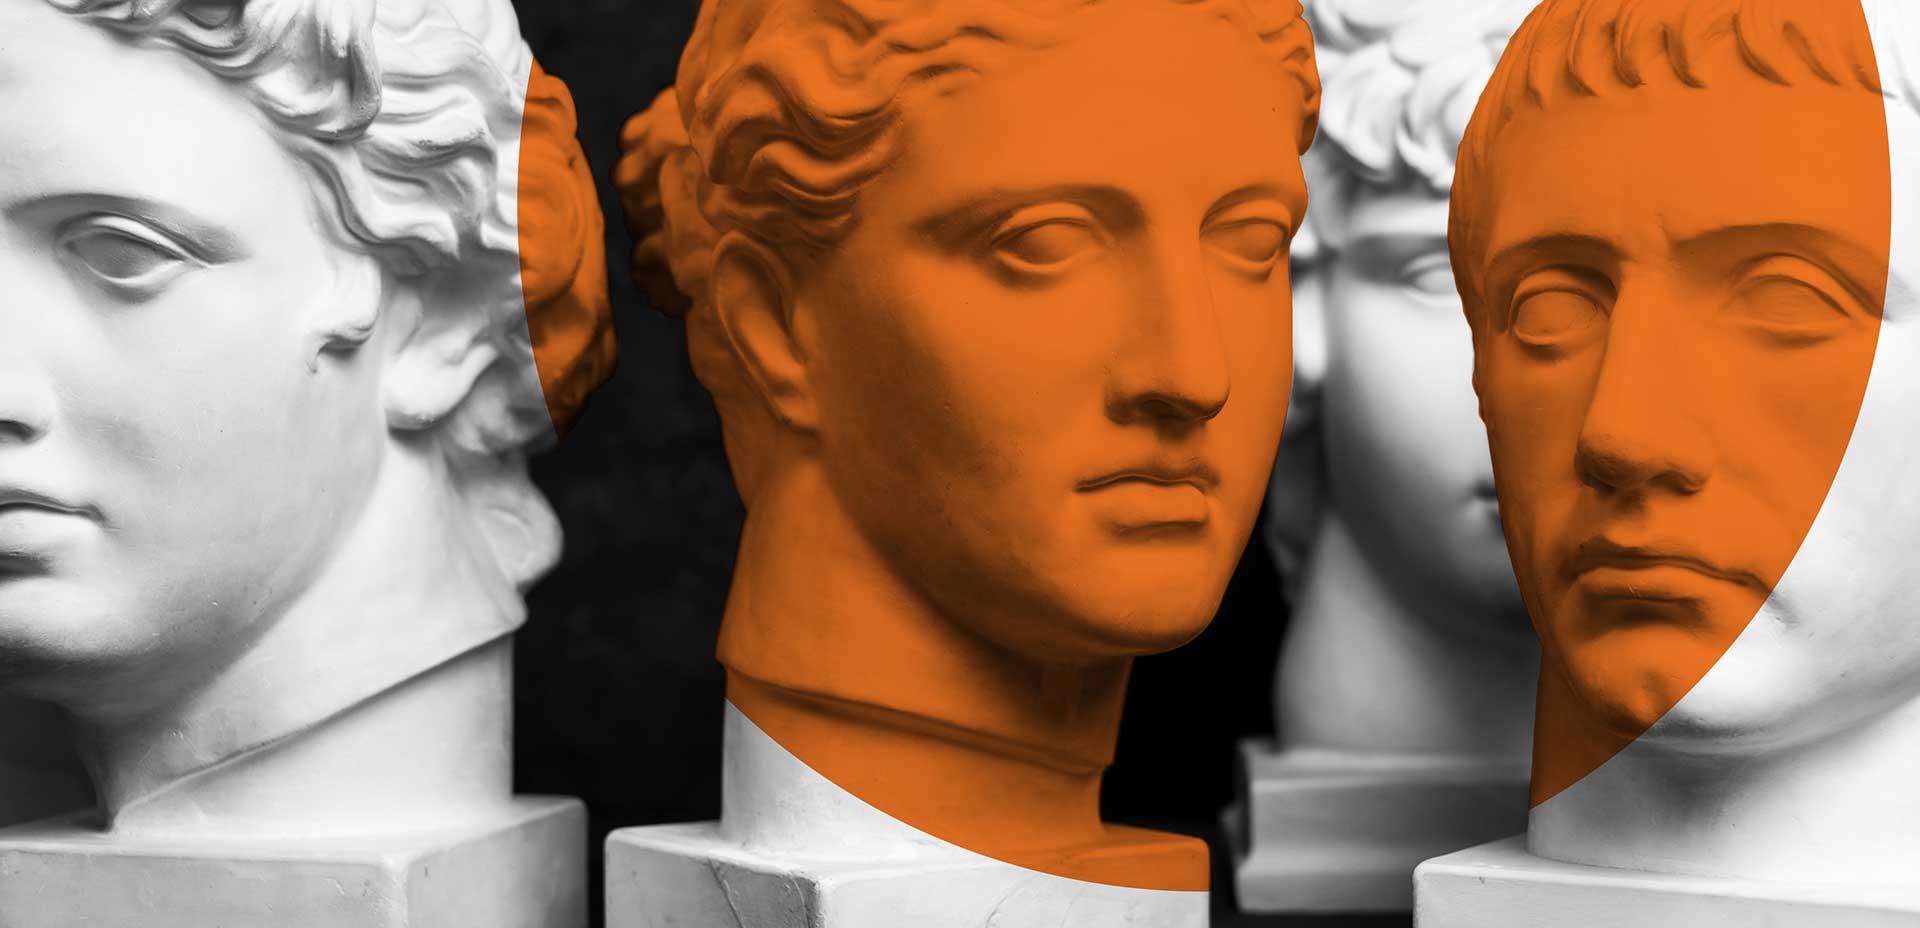 Close-ups of statue faces symbolizing philosophy.